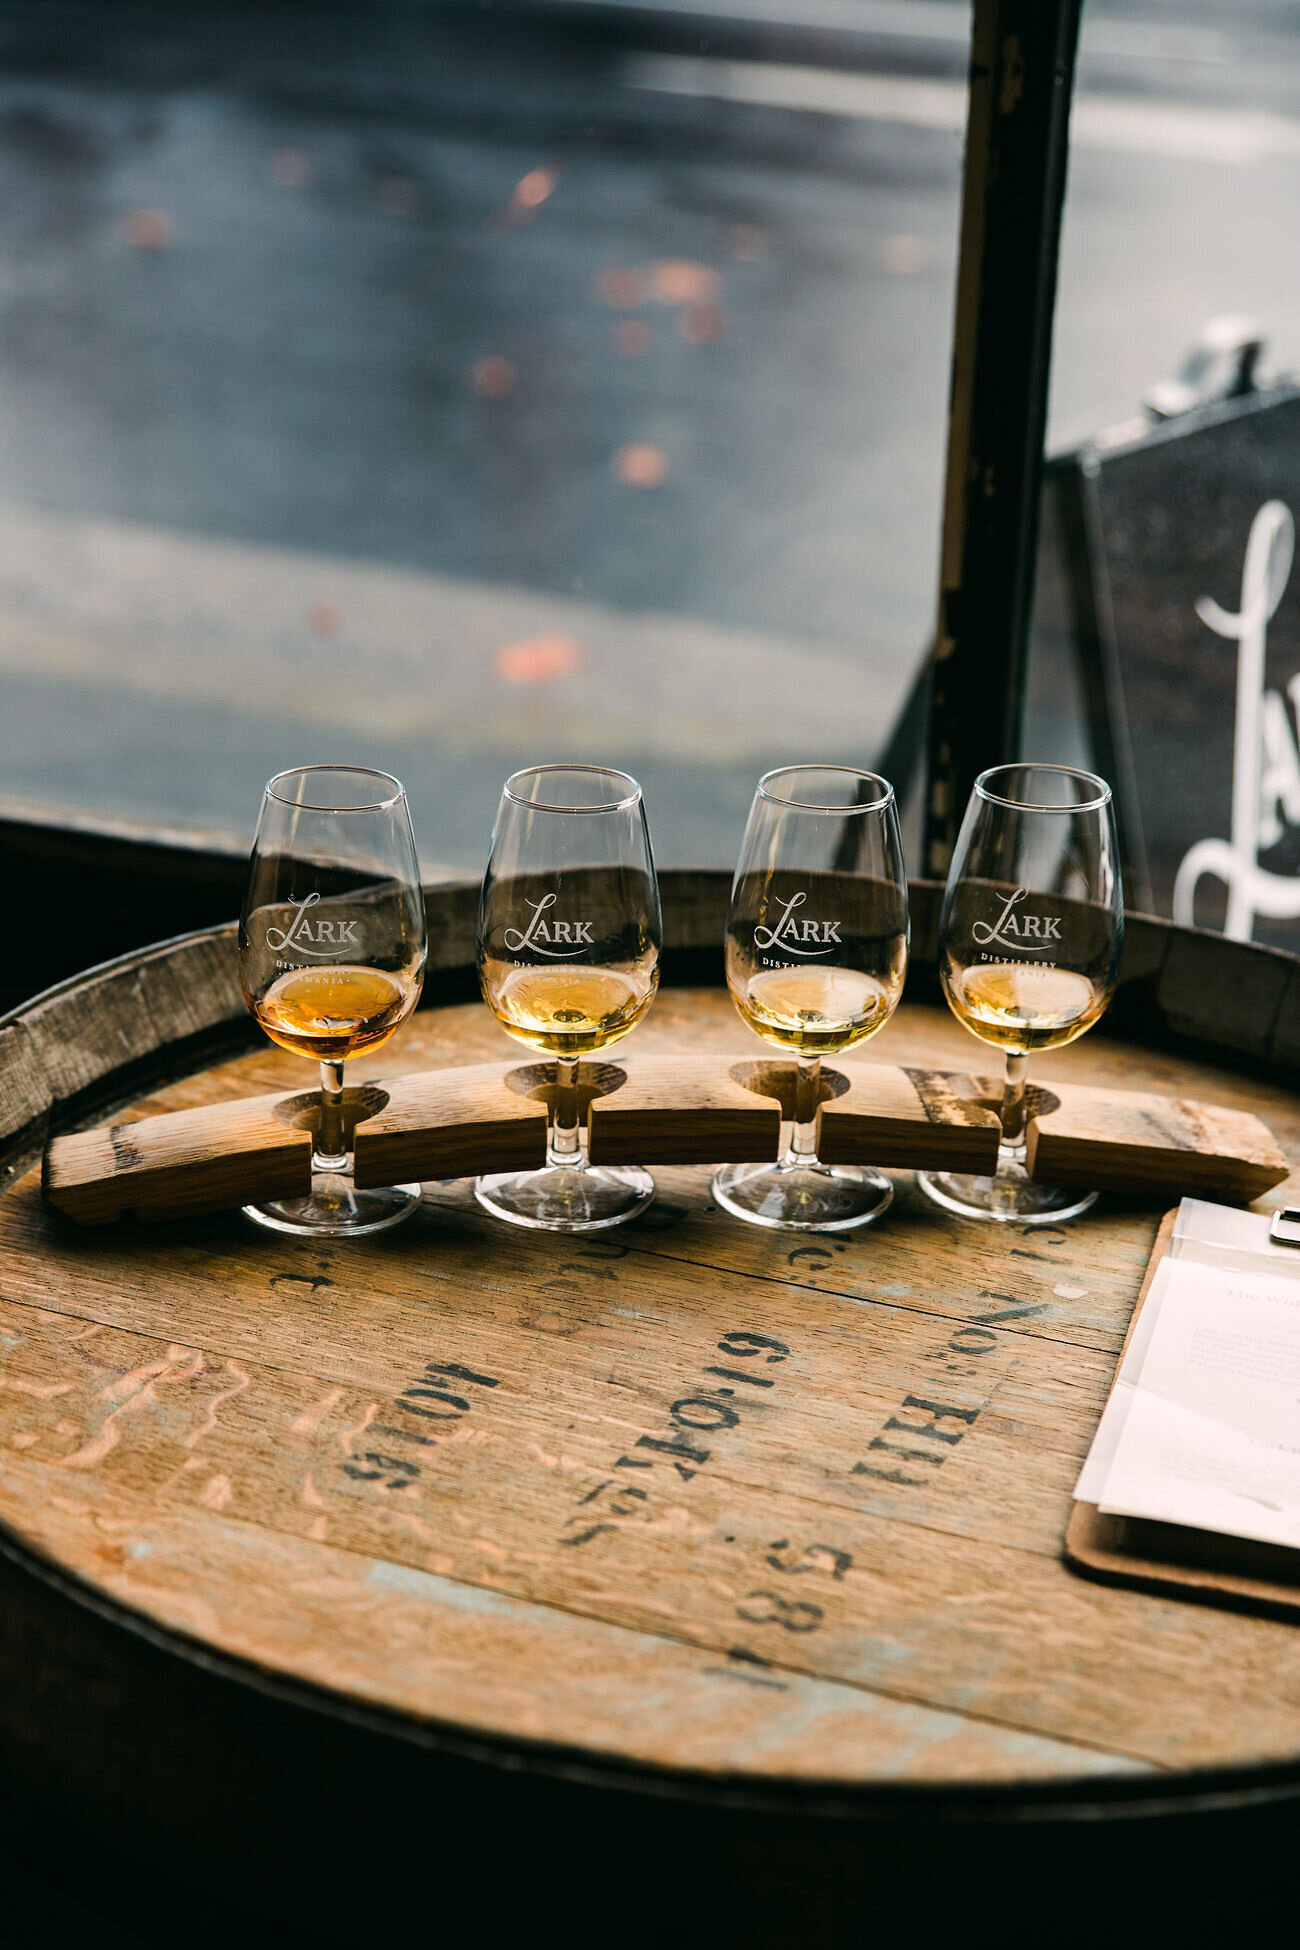 San Diego branding photographer Chelsea Loren for a moody scene Lark Distillery Hobart Tasmania whiskey tasting glasses flight